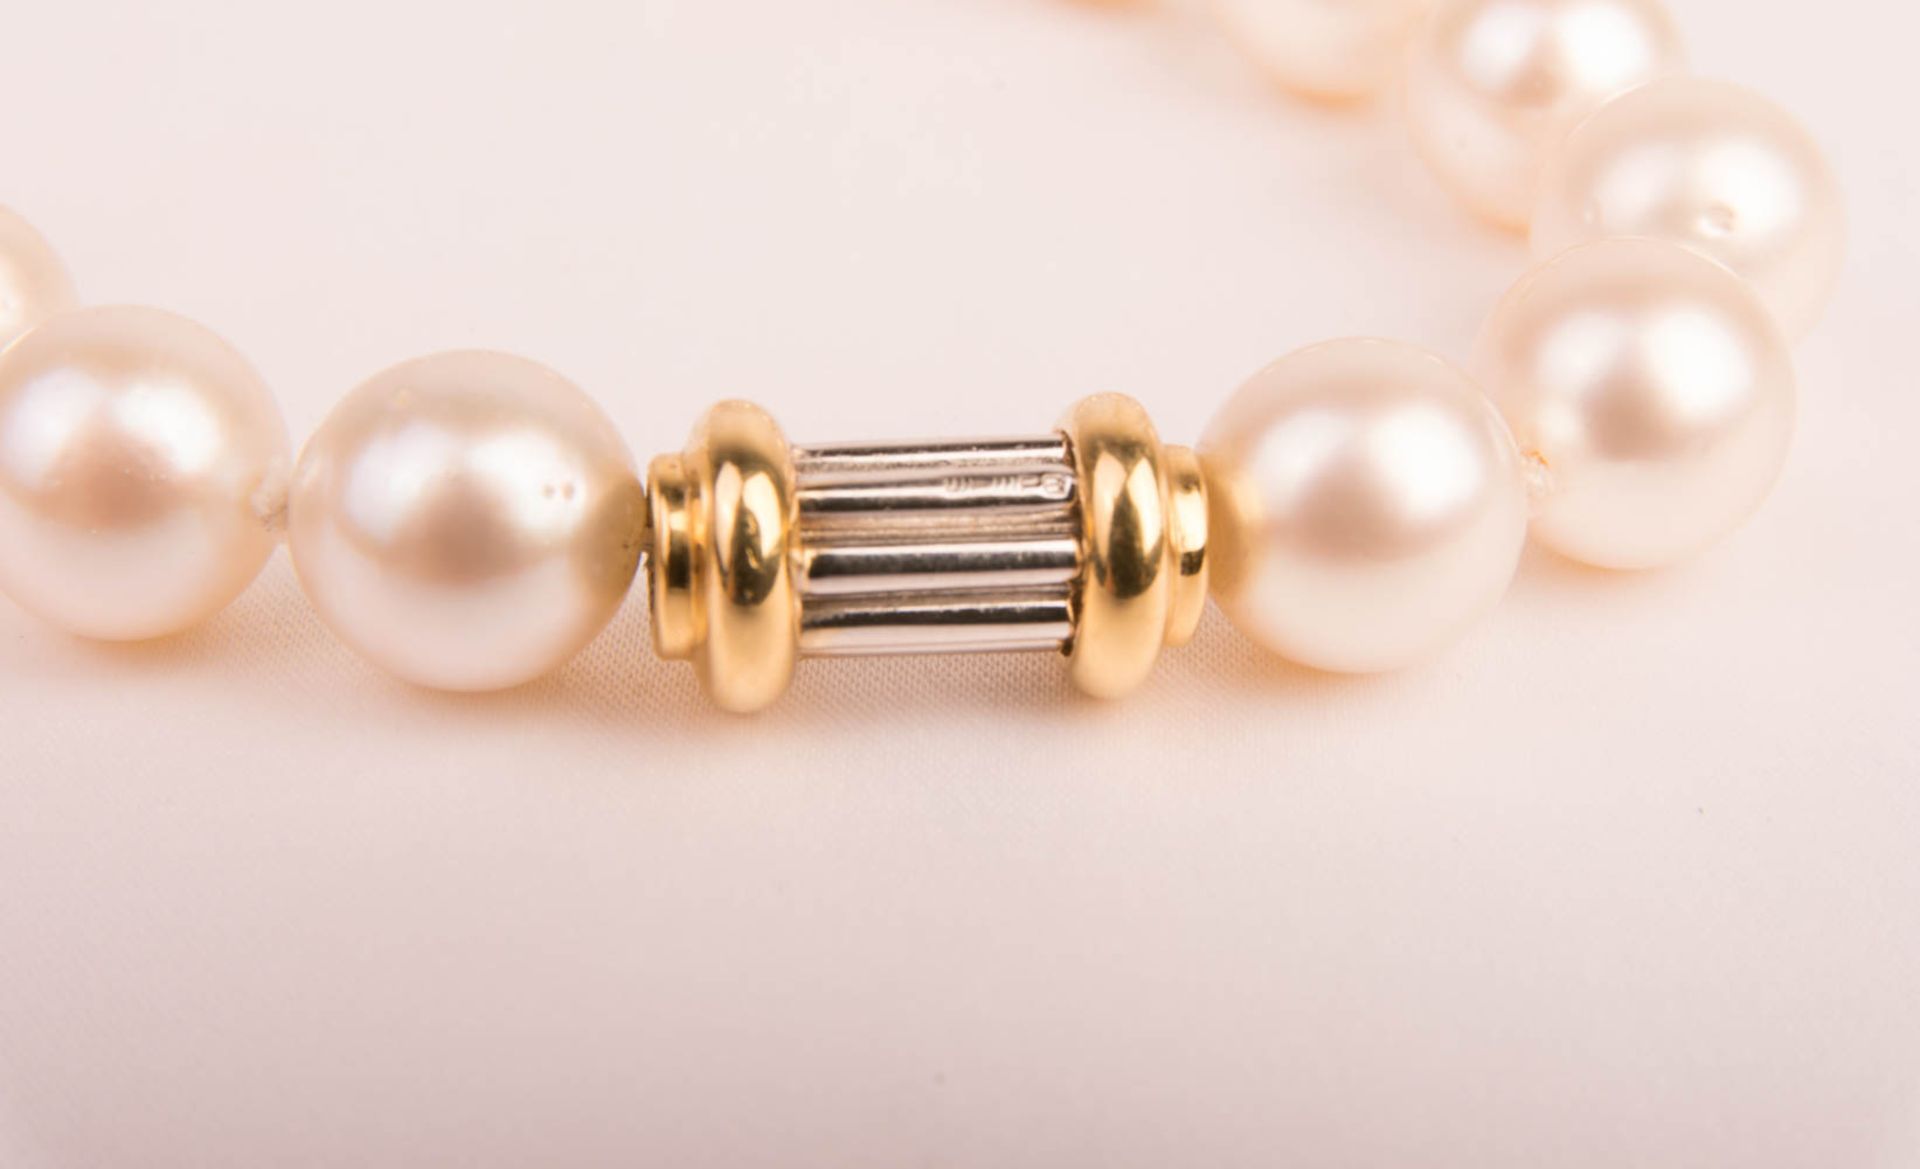 Wempe, Perlenkette mit Goldschließe, 750er Gelb-/Weißgold. - Bild 3 aus 7